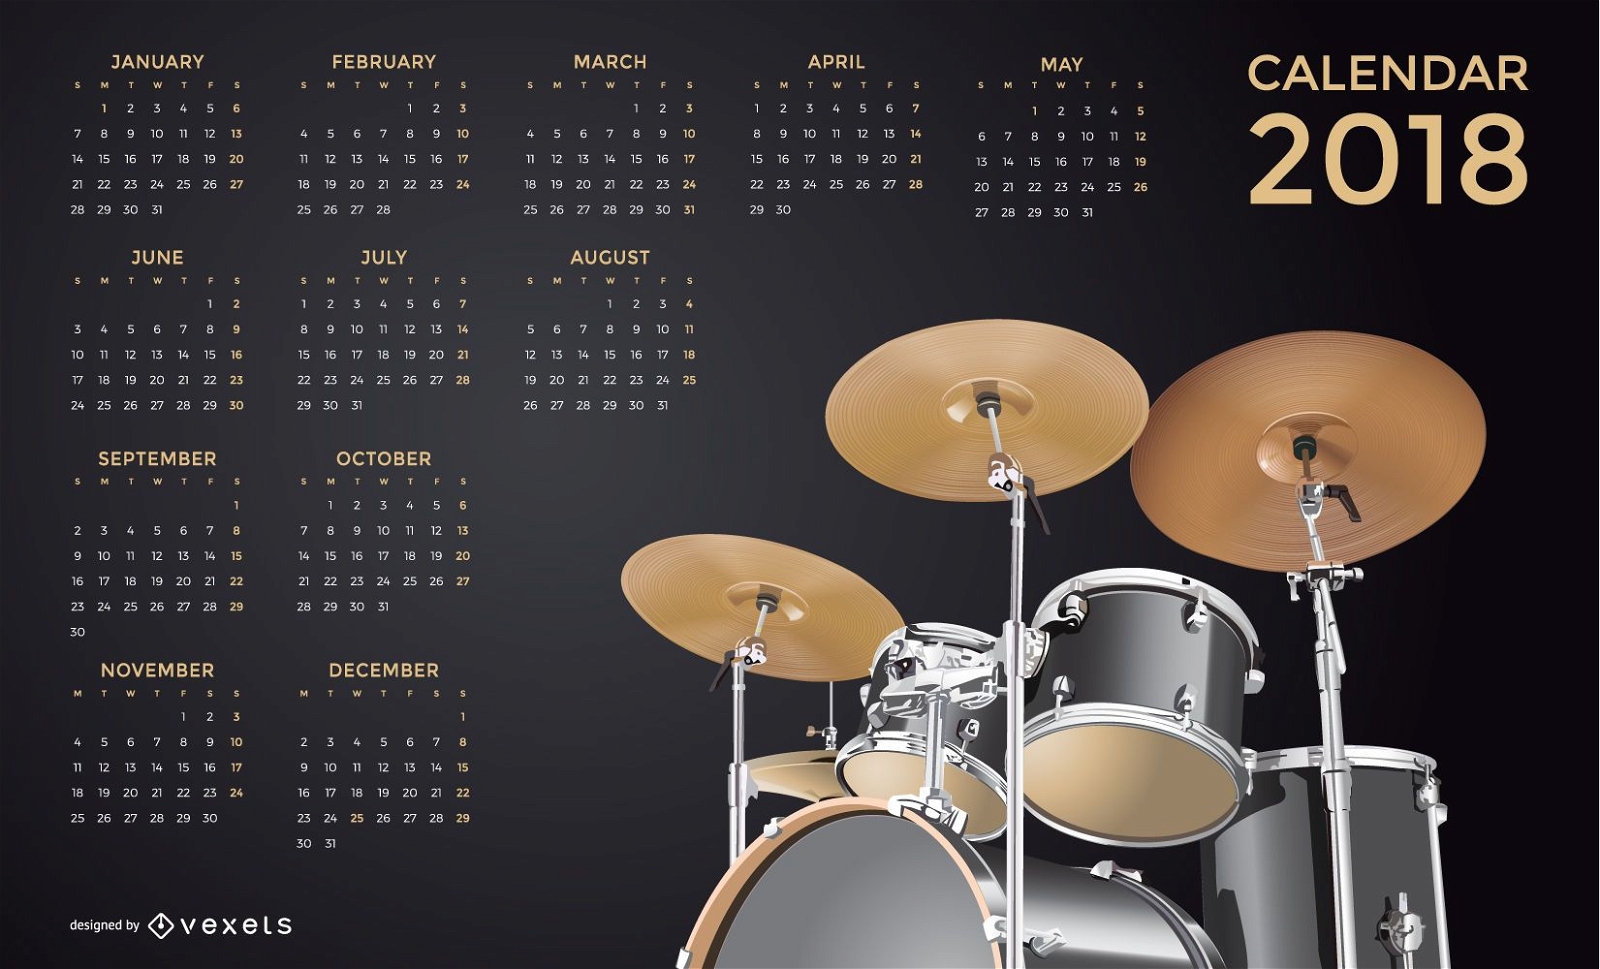 Calendario de música 2018